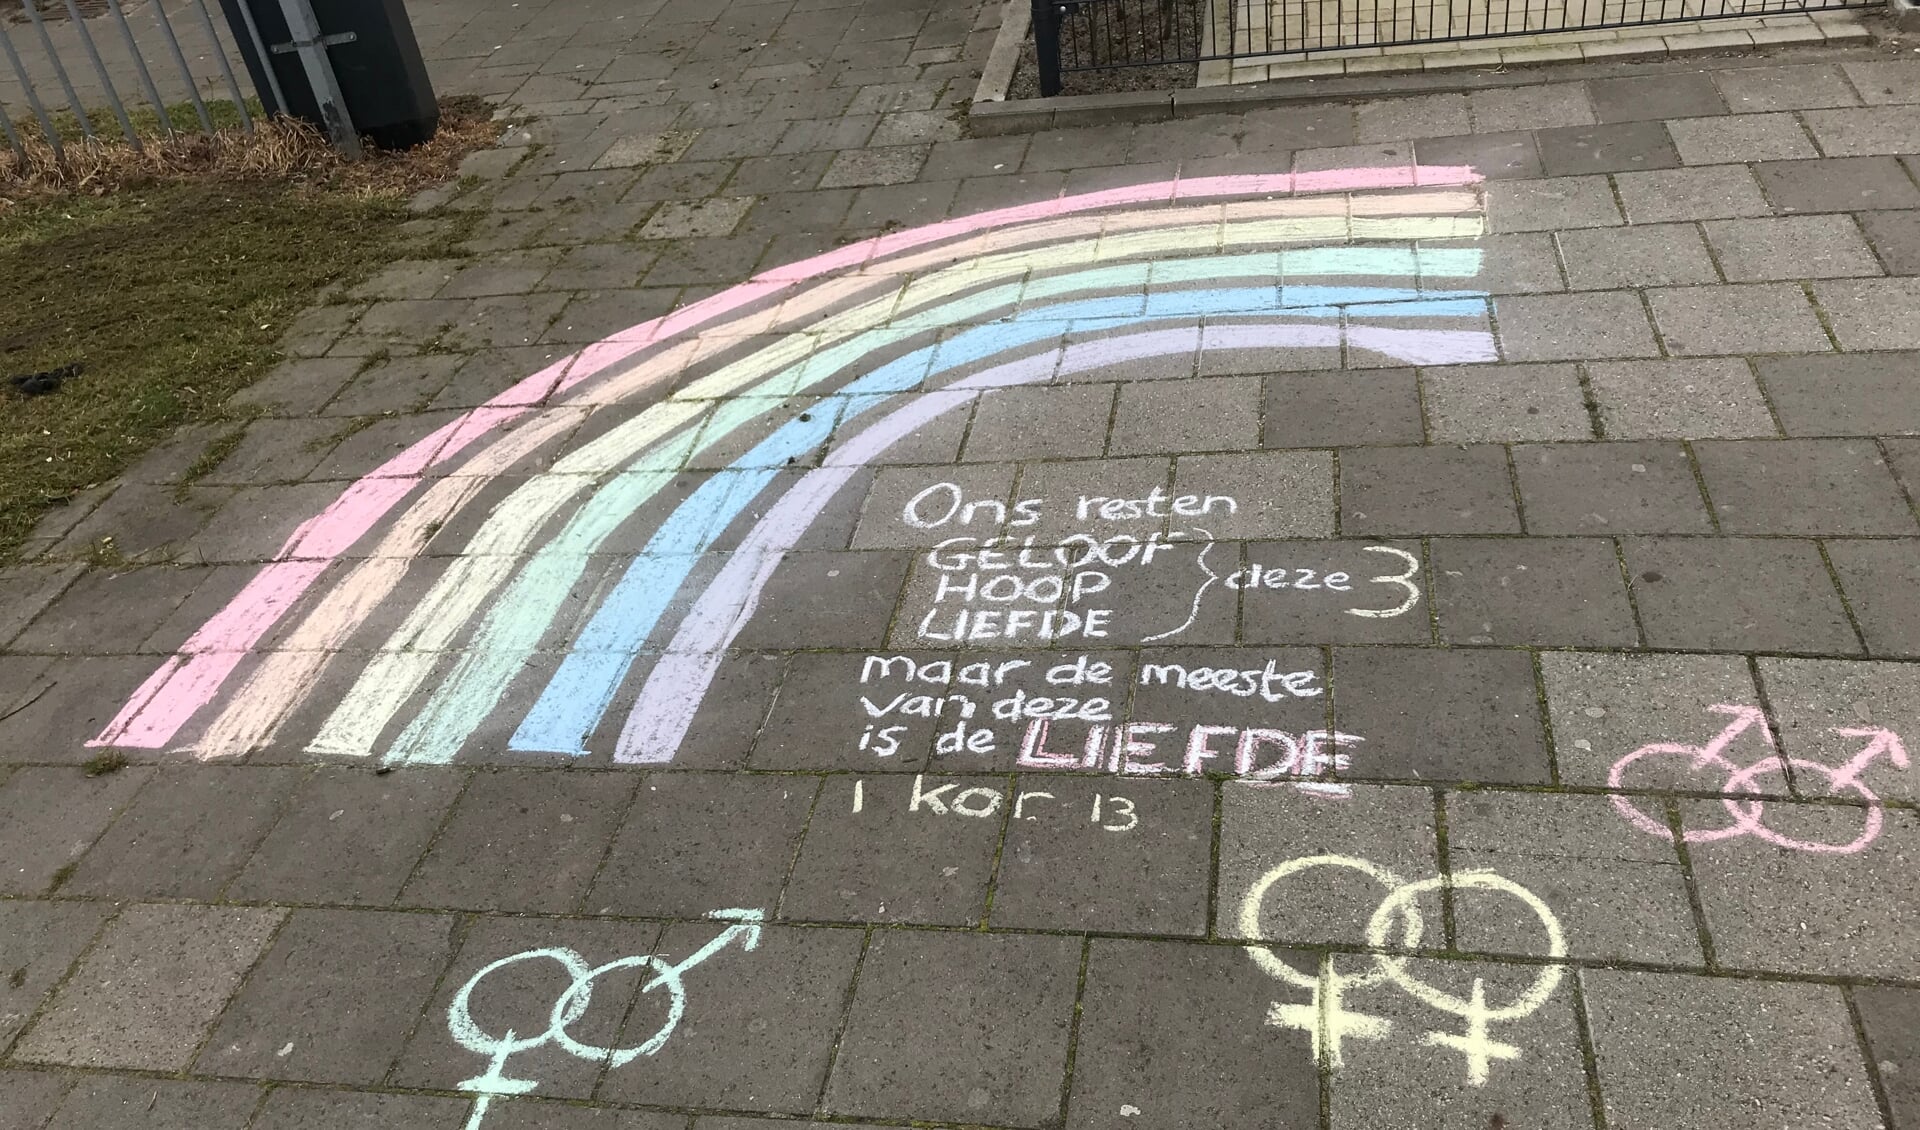 Na publicatie van het NRC artikel lwerd bij de Gomarus scholengemeenschap in krijt een regenboog getekend met de bijbeltekst uit 1 Korinthe 13 over de liefde